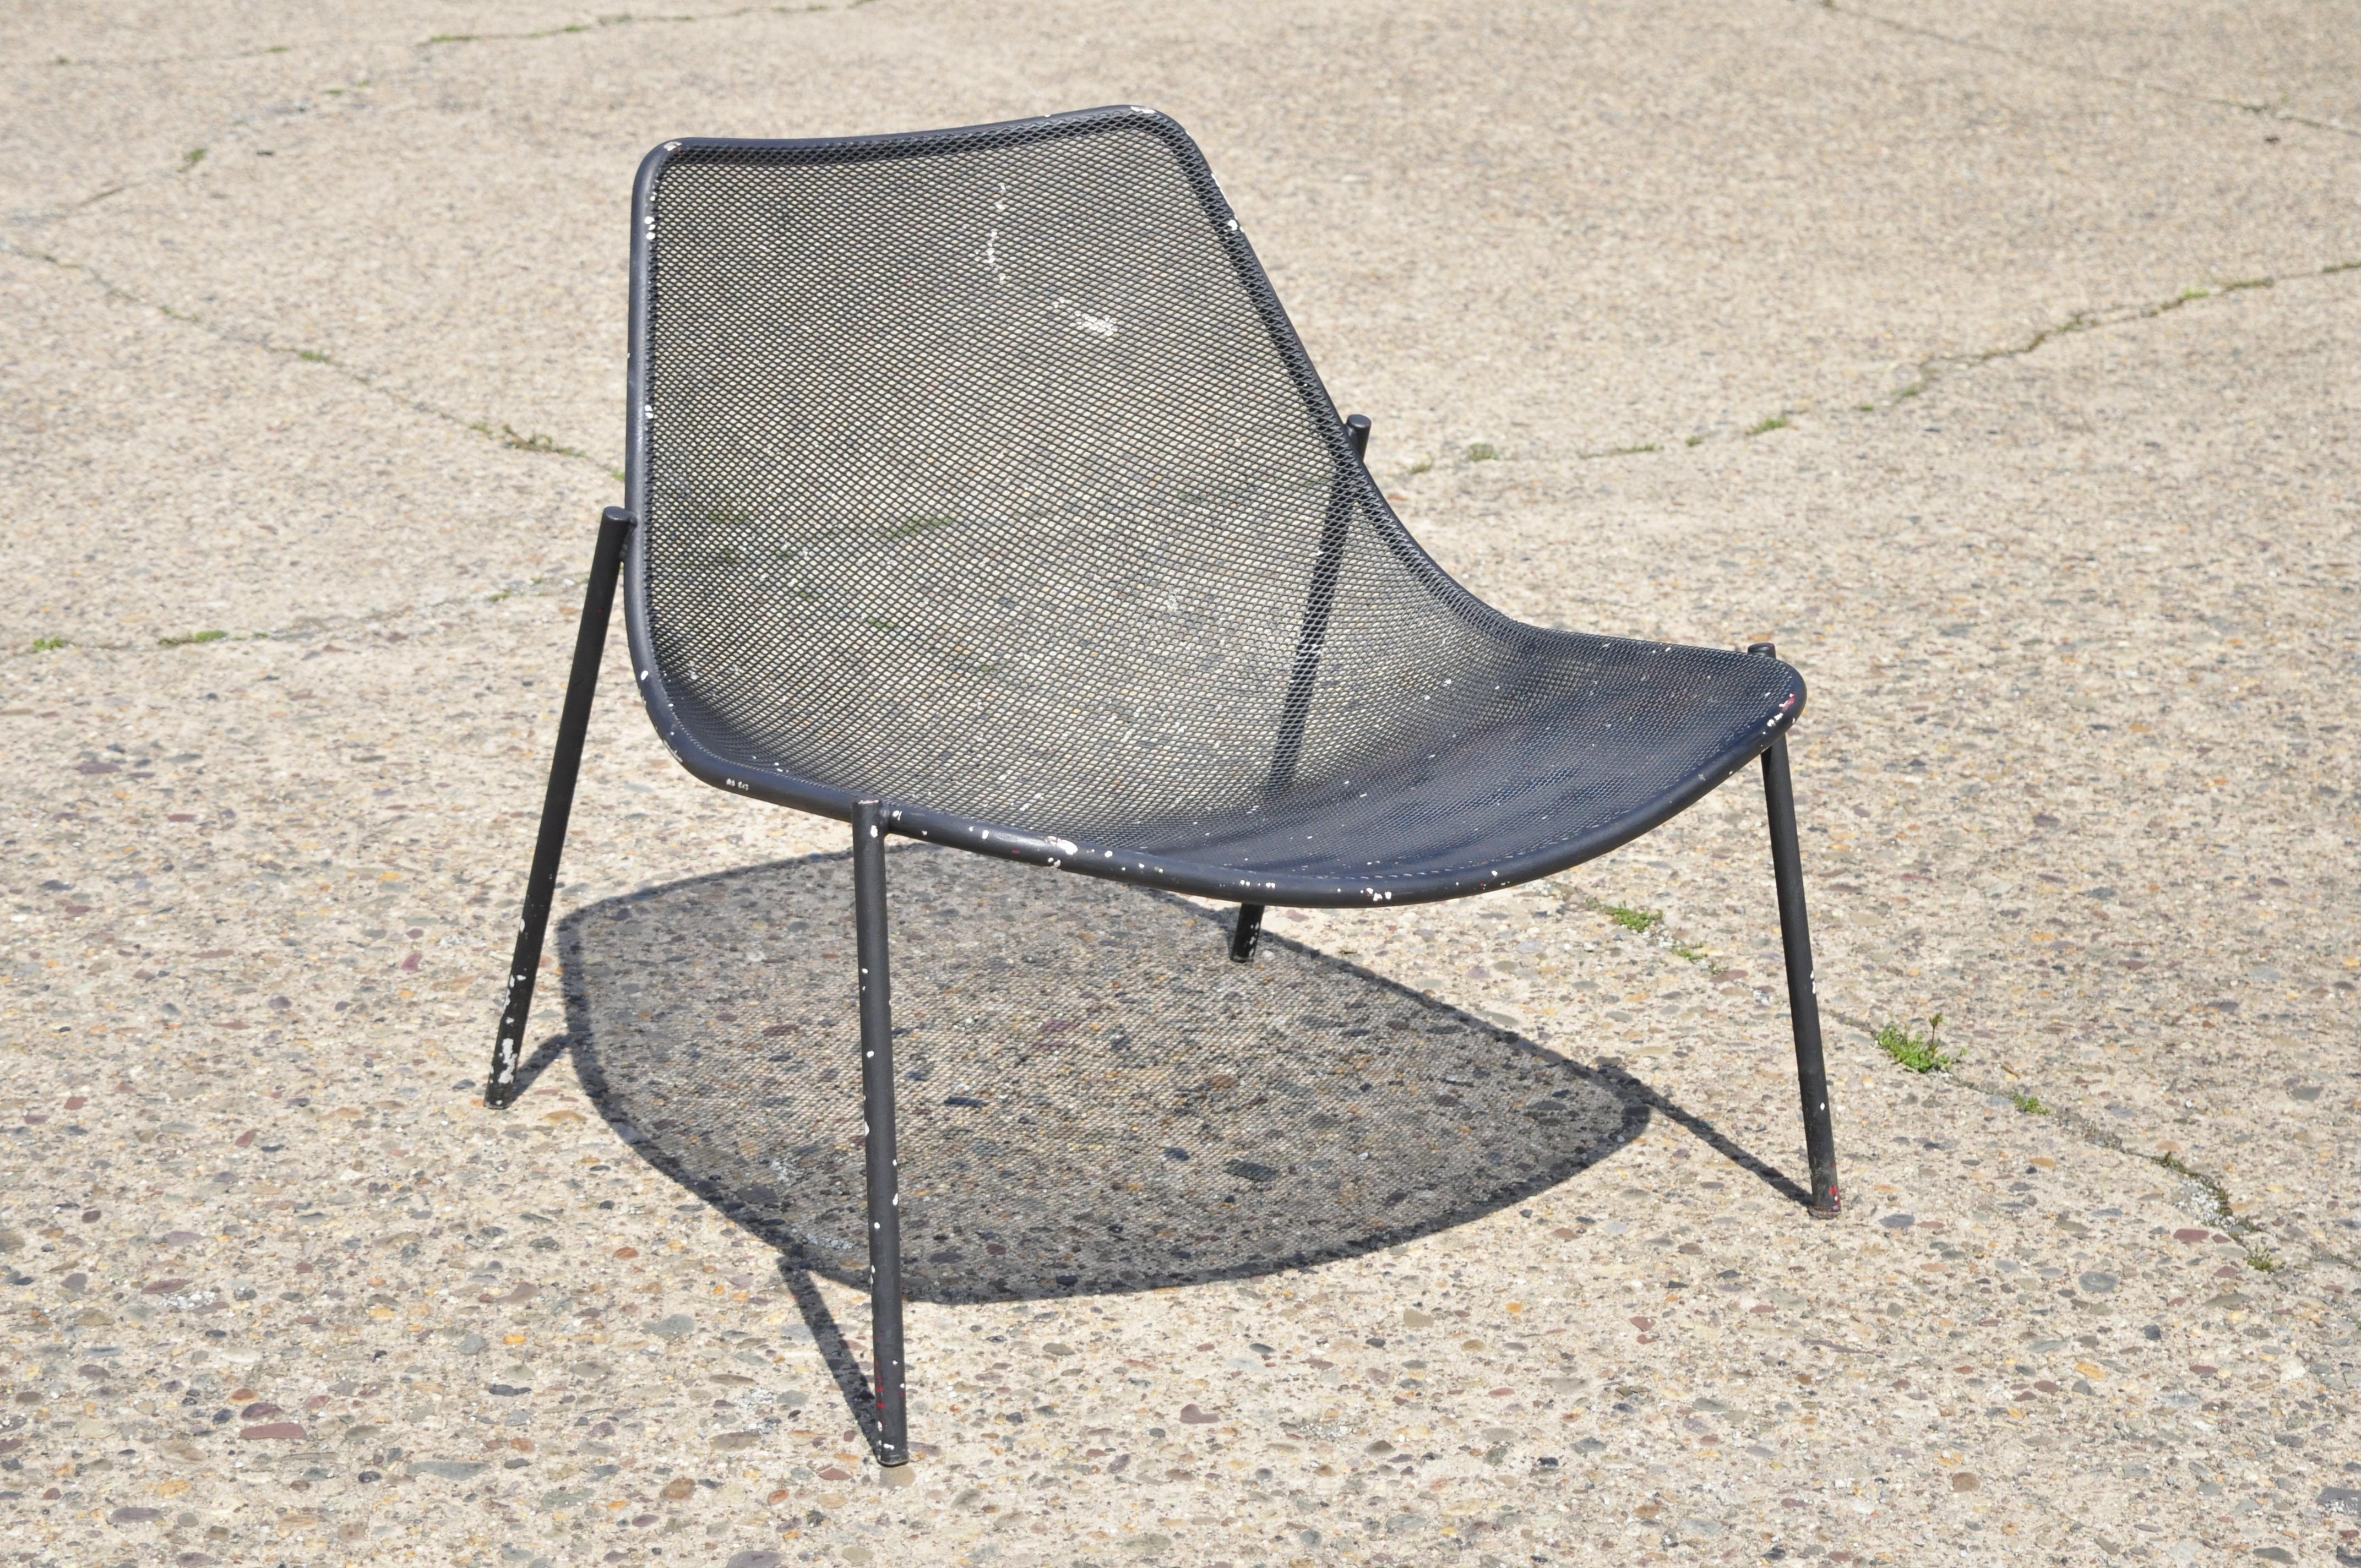 Vintage Metallgeflecht perforiert breite Sitz moderne Terrasse Garten Lounge Stuhl. Der Artikel zeichnet sich durch eine große, breite Sitzfläche, einen Rahmen aus Metallgeflecht, klare, modernistische Linien, einen großartigen Stil und eine tolle